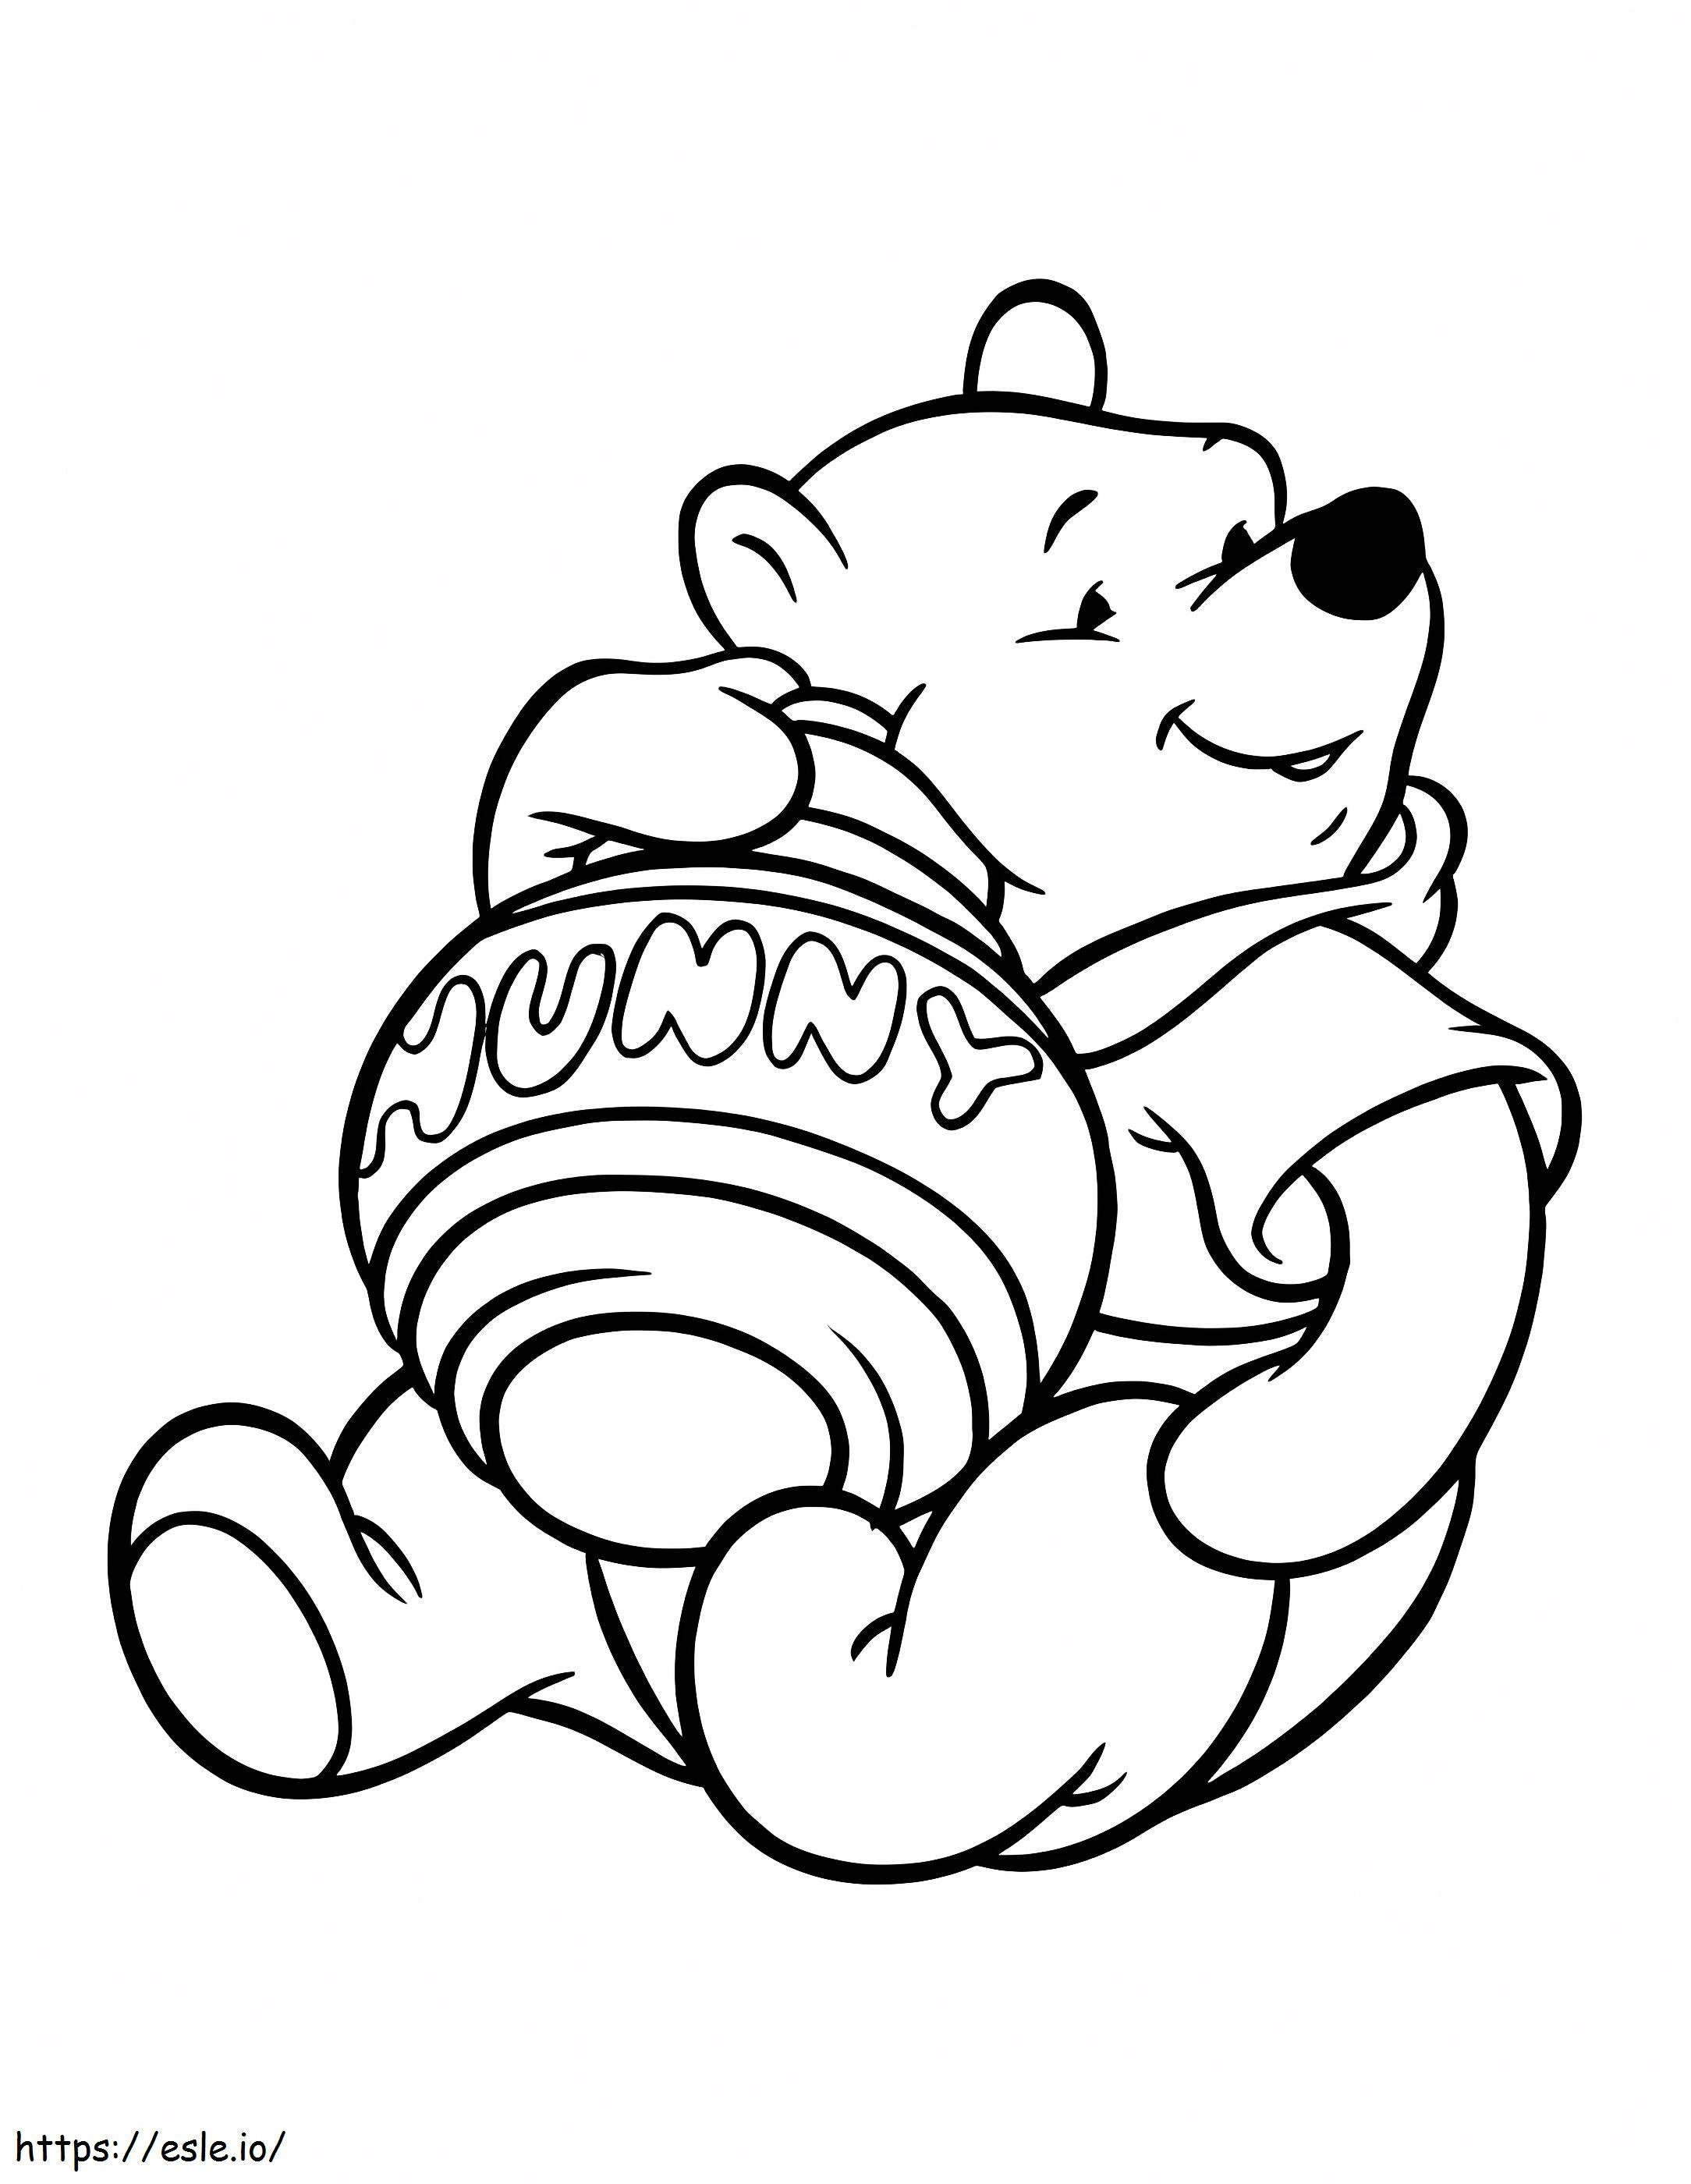 Perfeito Ursinho Pooh para colorir